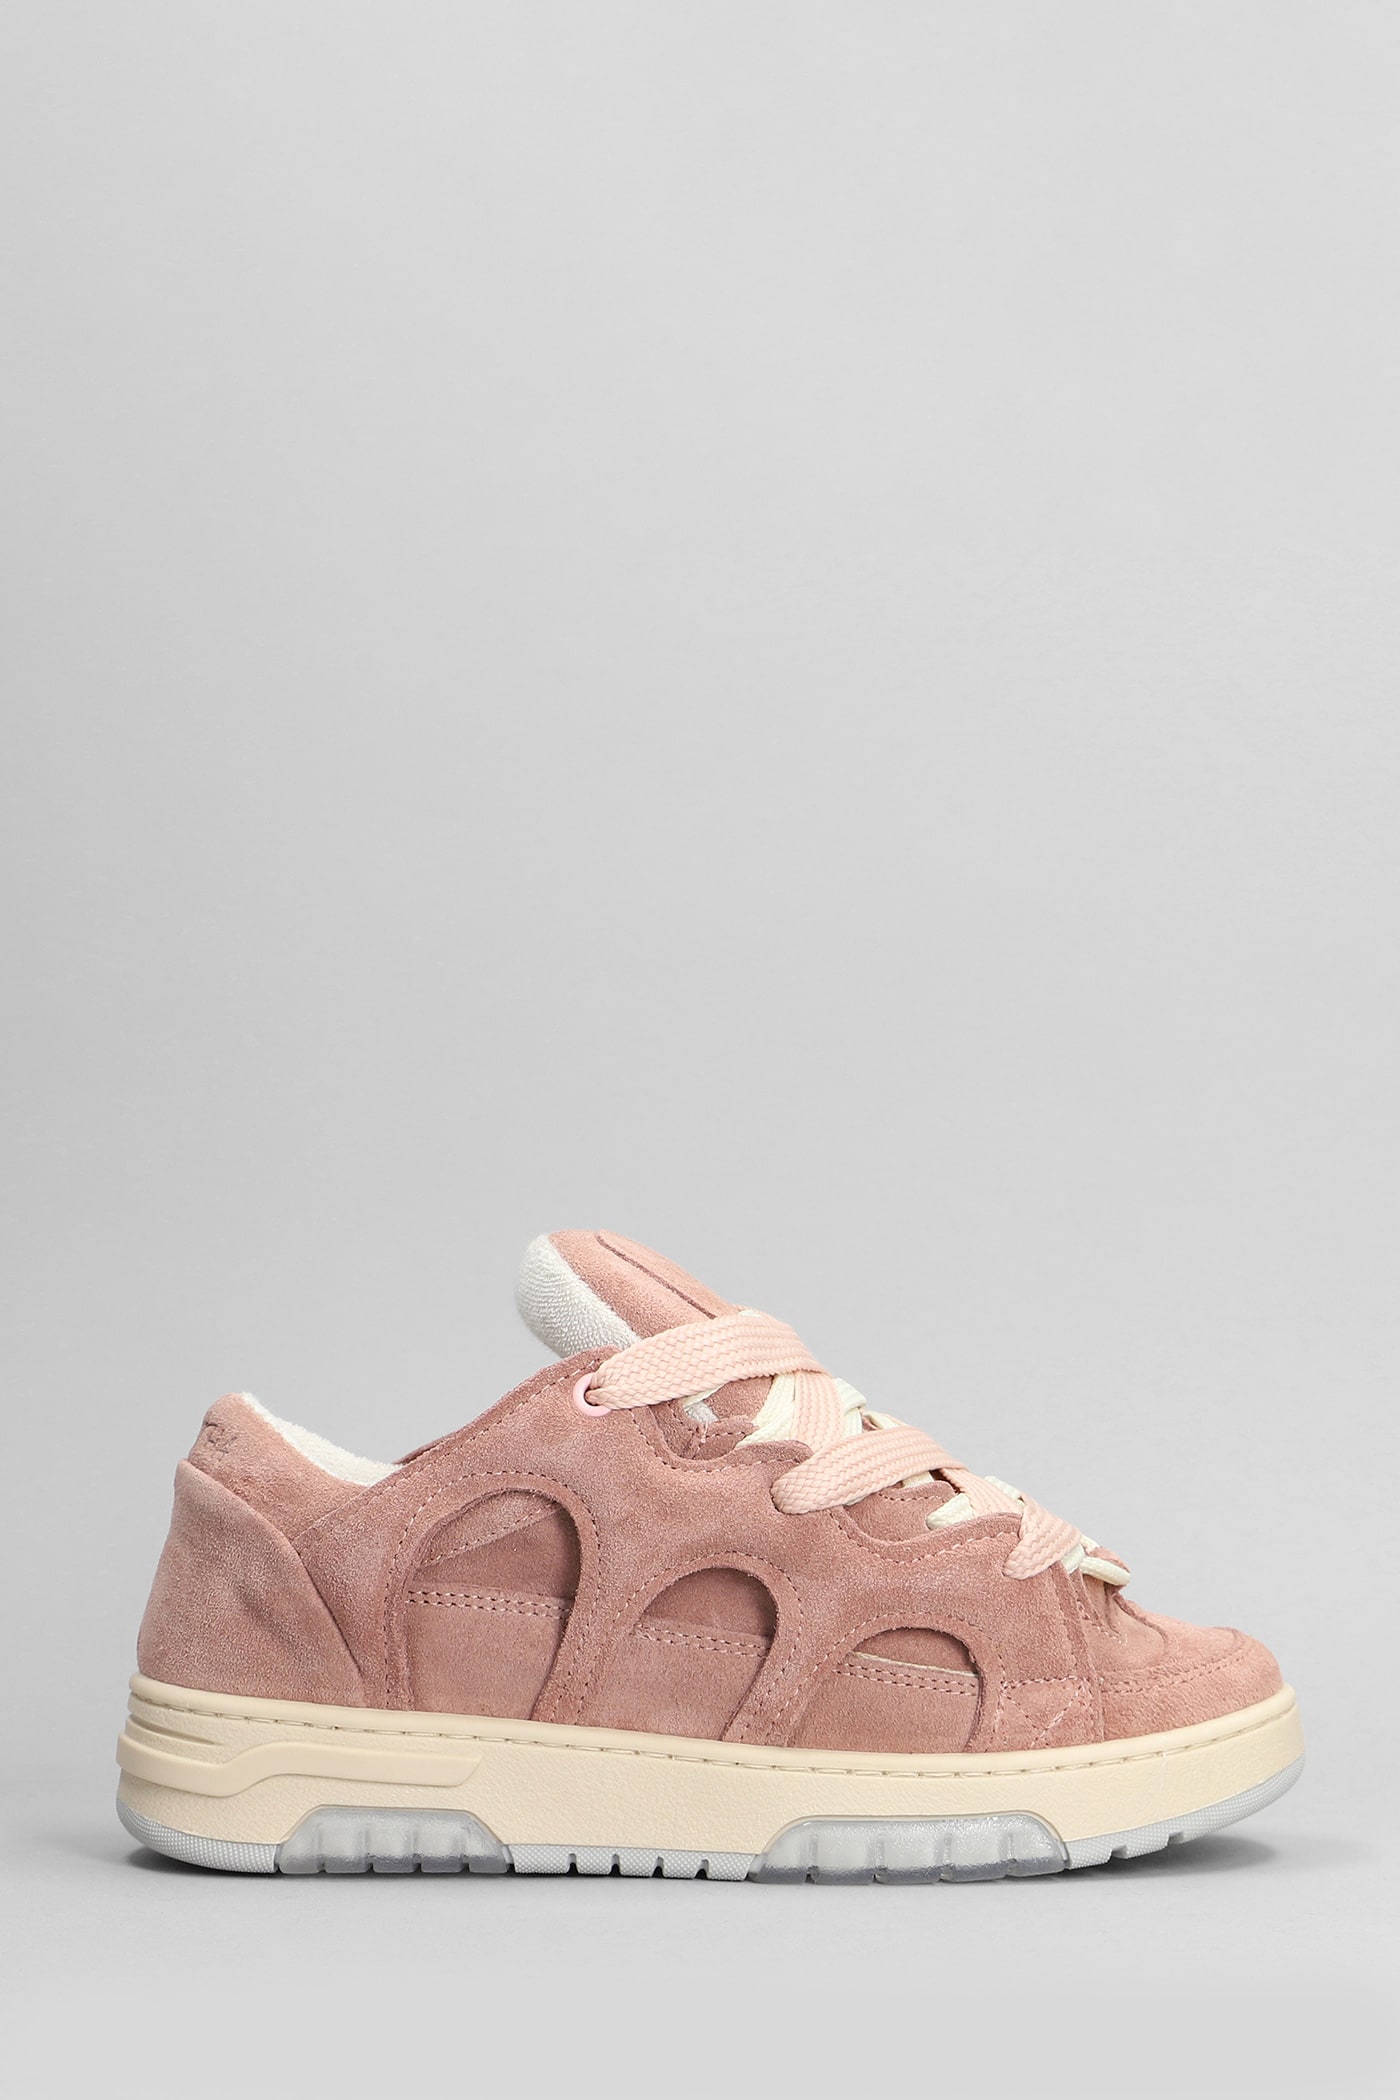 Paura Santha 1 Sneakers In Rose-pink Suede